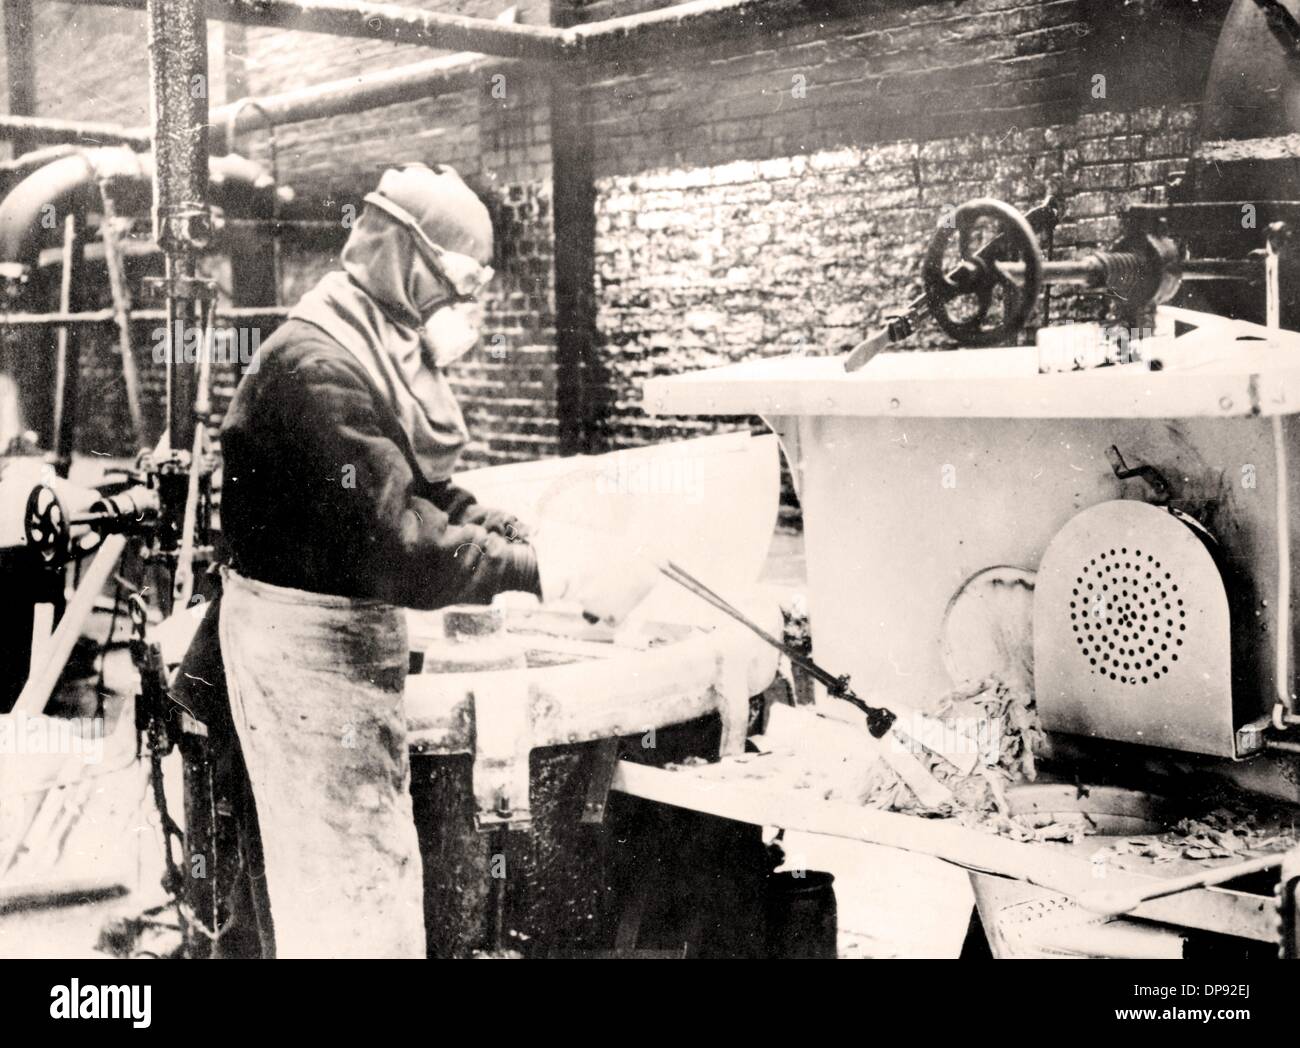 Producción de guncotton en una planta de nitración, lugar y fecha desconocidos. Guncotton fue un reemplazo para el polvo negro durante la Primera Guerra Mundial Archivo fotográfico für Zeitgeschichte Foto de stock